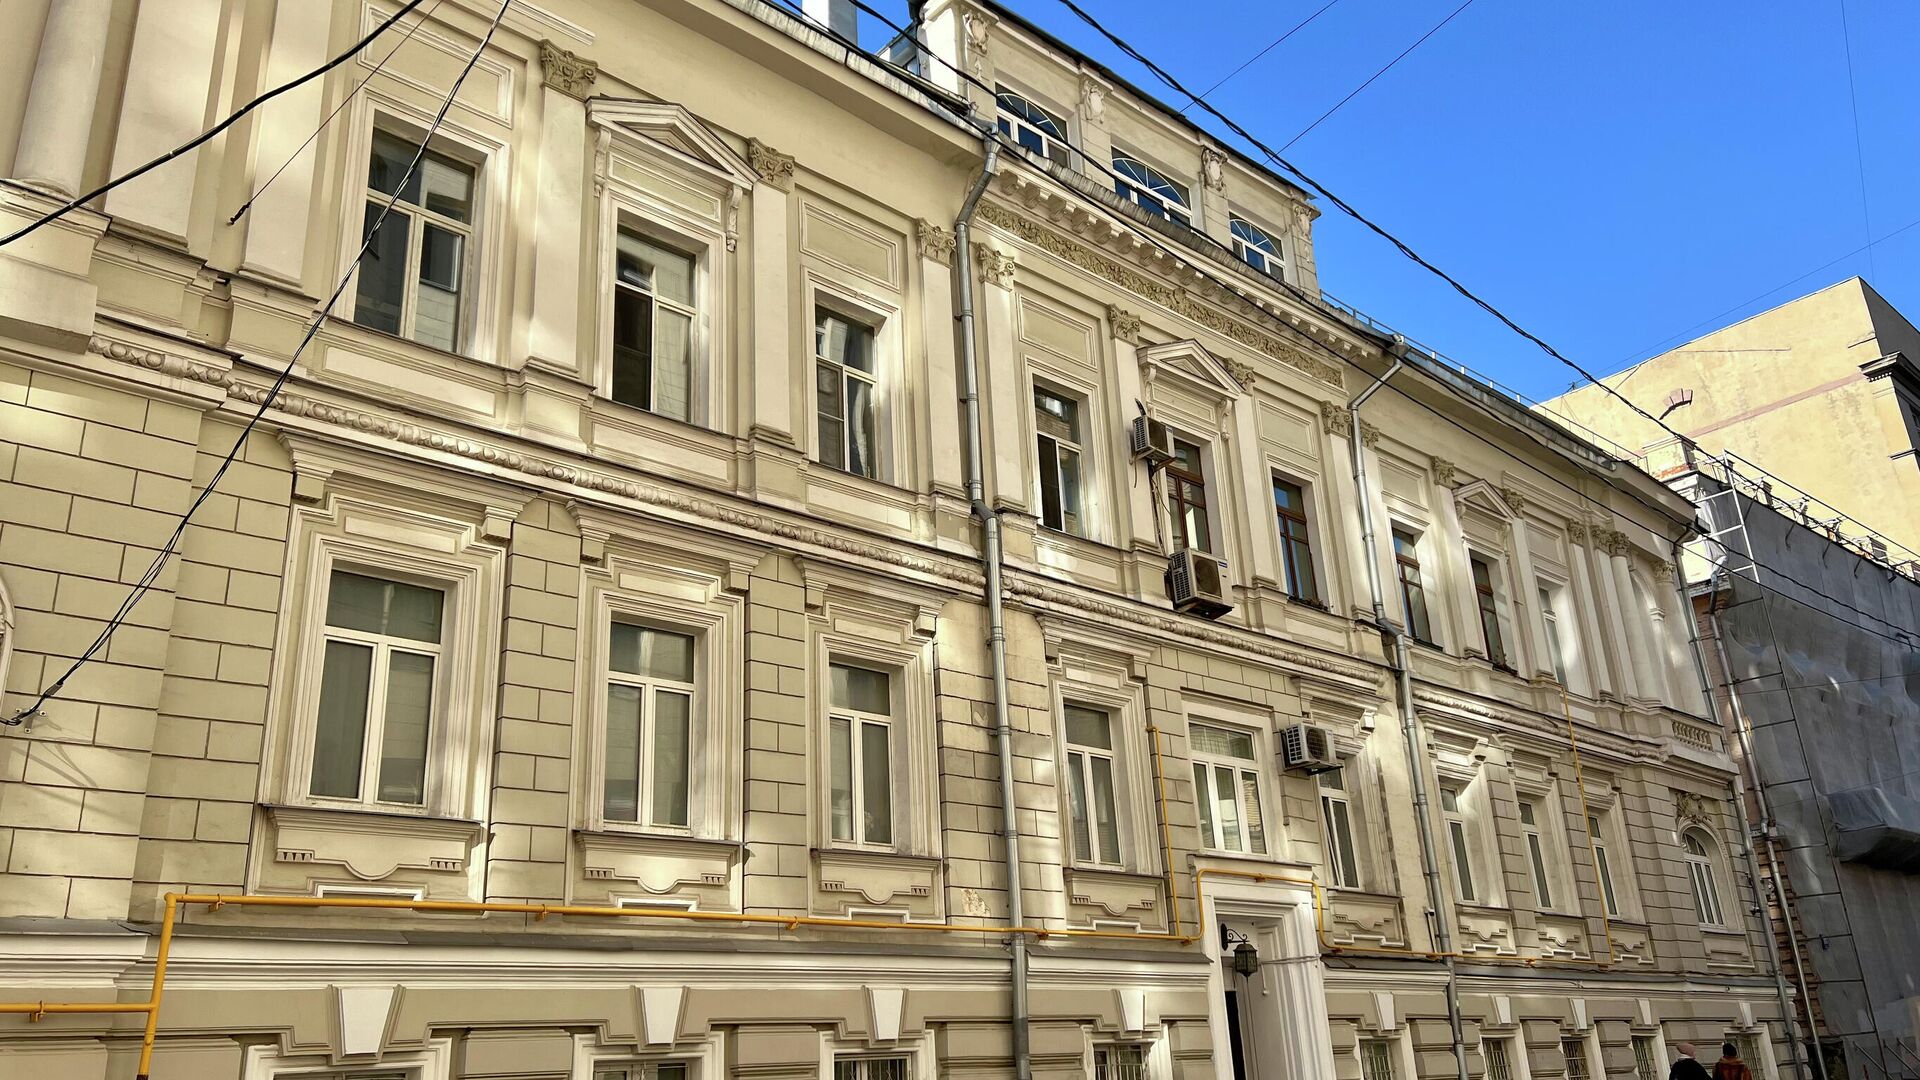 Дом 1901 года постройки в Староконюшенном переулке Москвы - РИА Новости, 1920, 04.03.2022